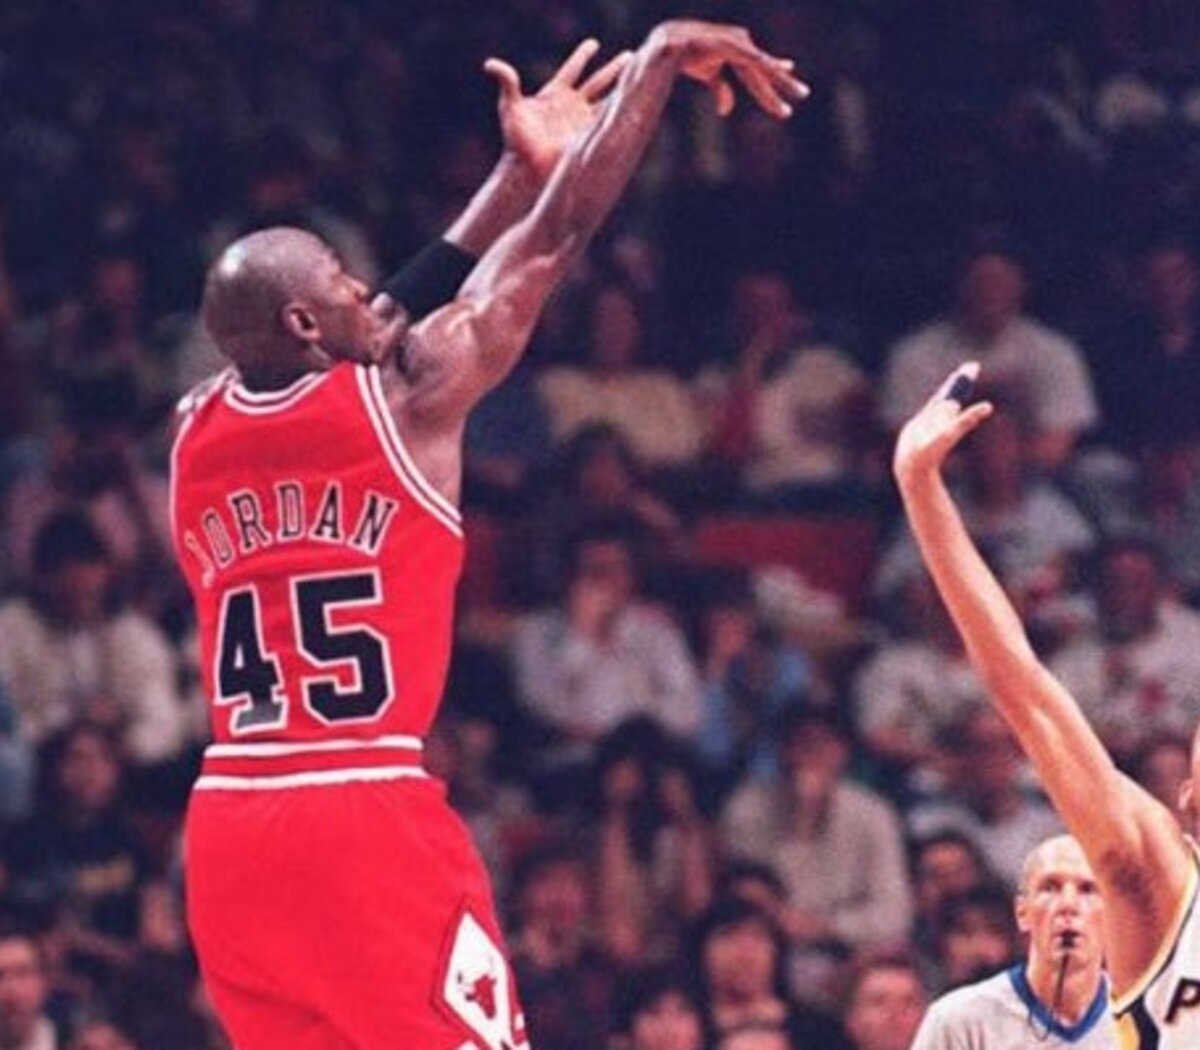 muelle Anguila Tomar conciencia I'm back": Hace 25 años, Michael Jordan volvía de su retiro | El astro  regresaba a Chicago Bulls después de casi dos años sin jugar | Página|12